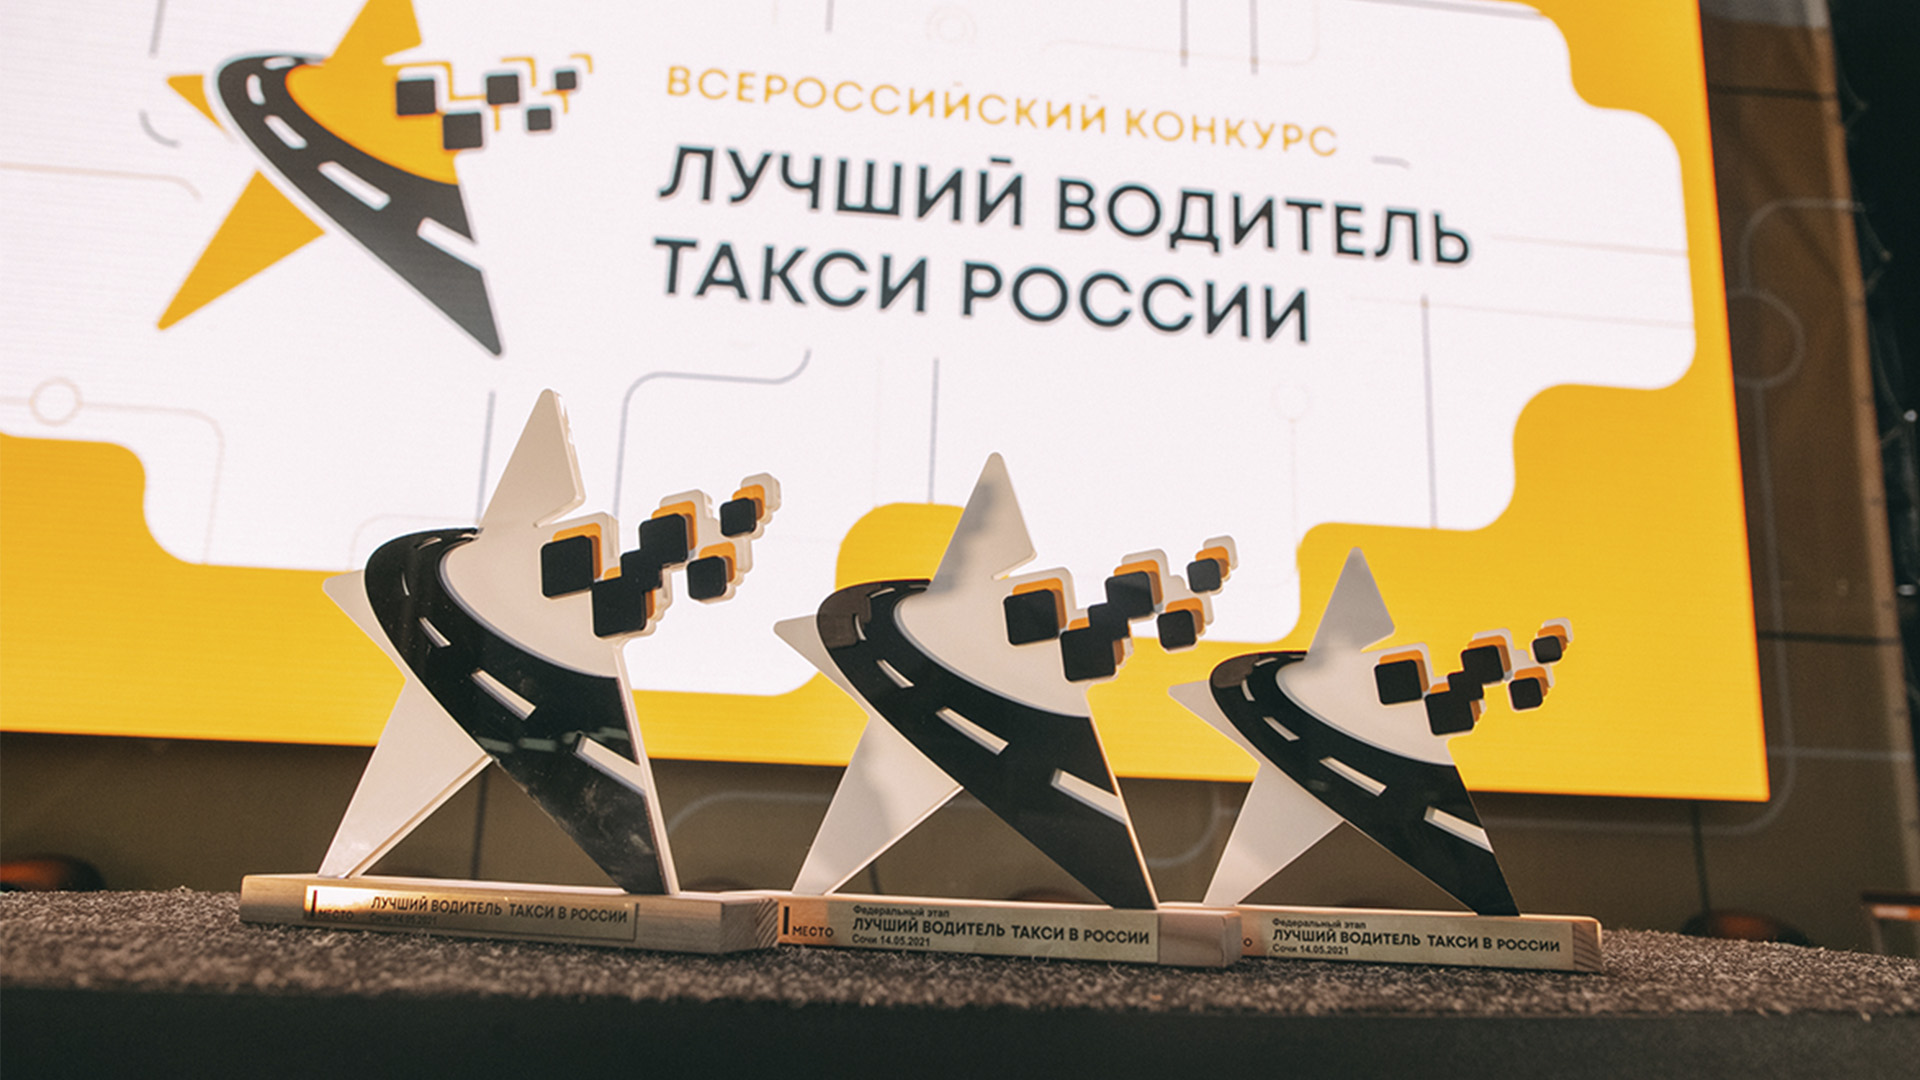 В апреле пройдут региональные этапы конкурса «Лучший водитель такси в России»